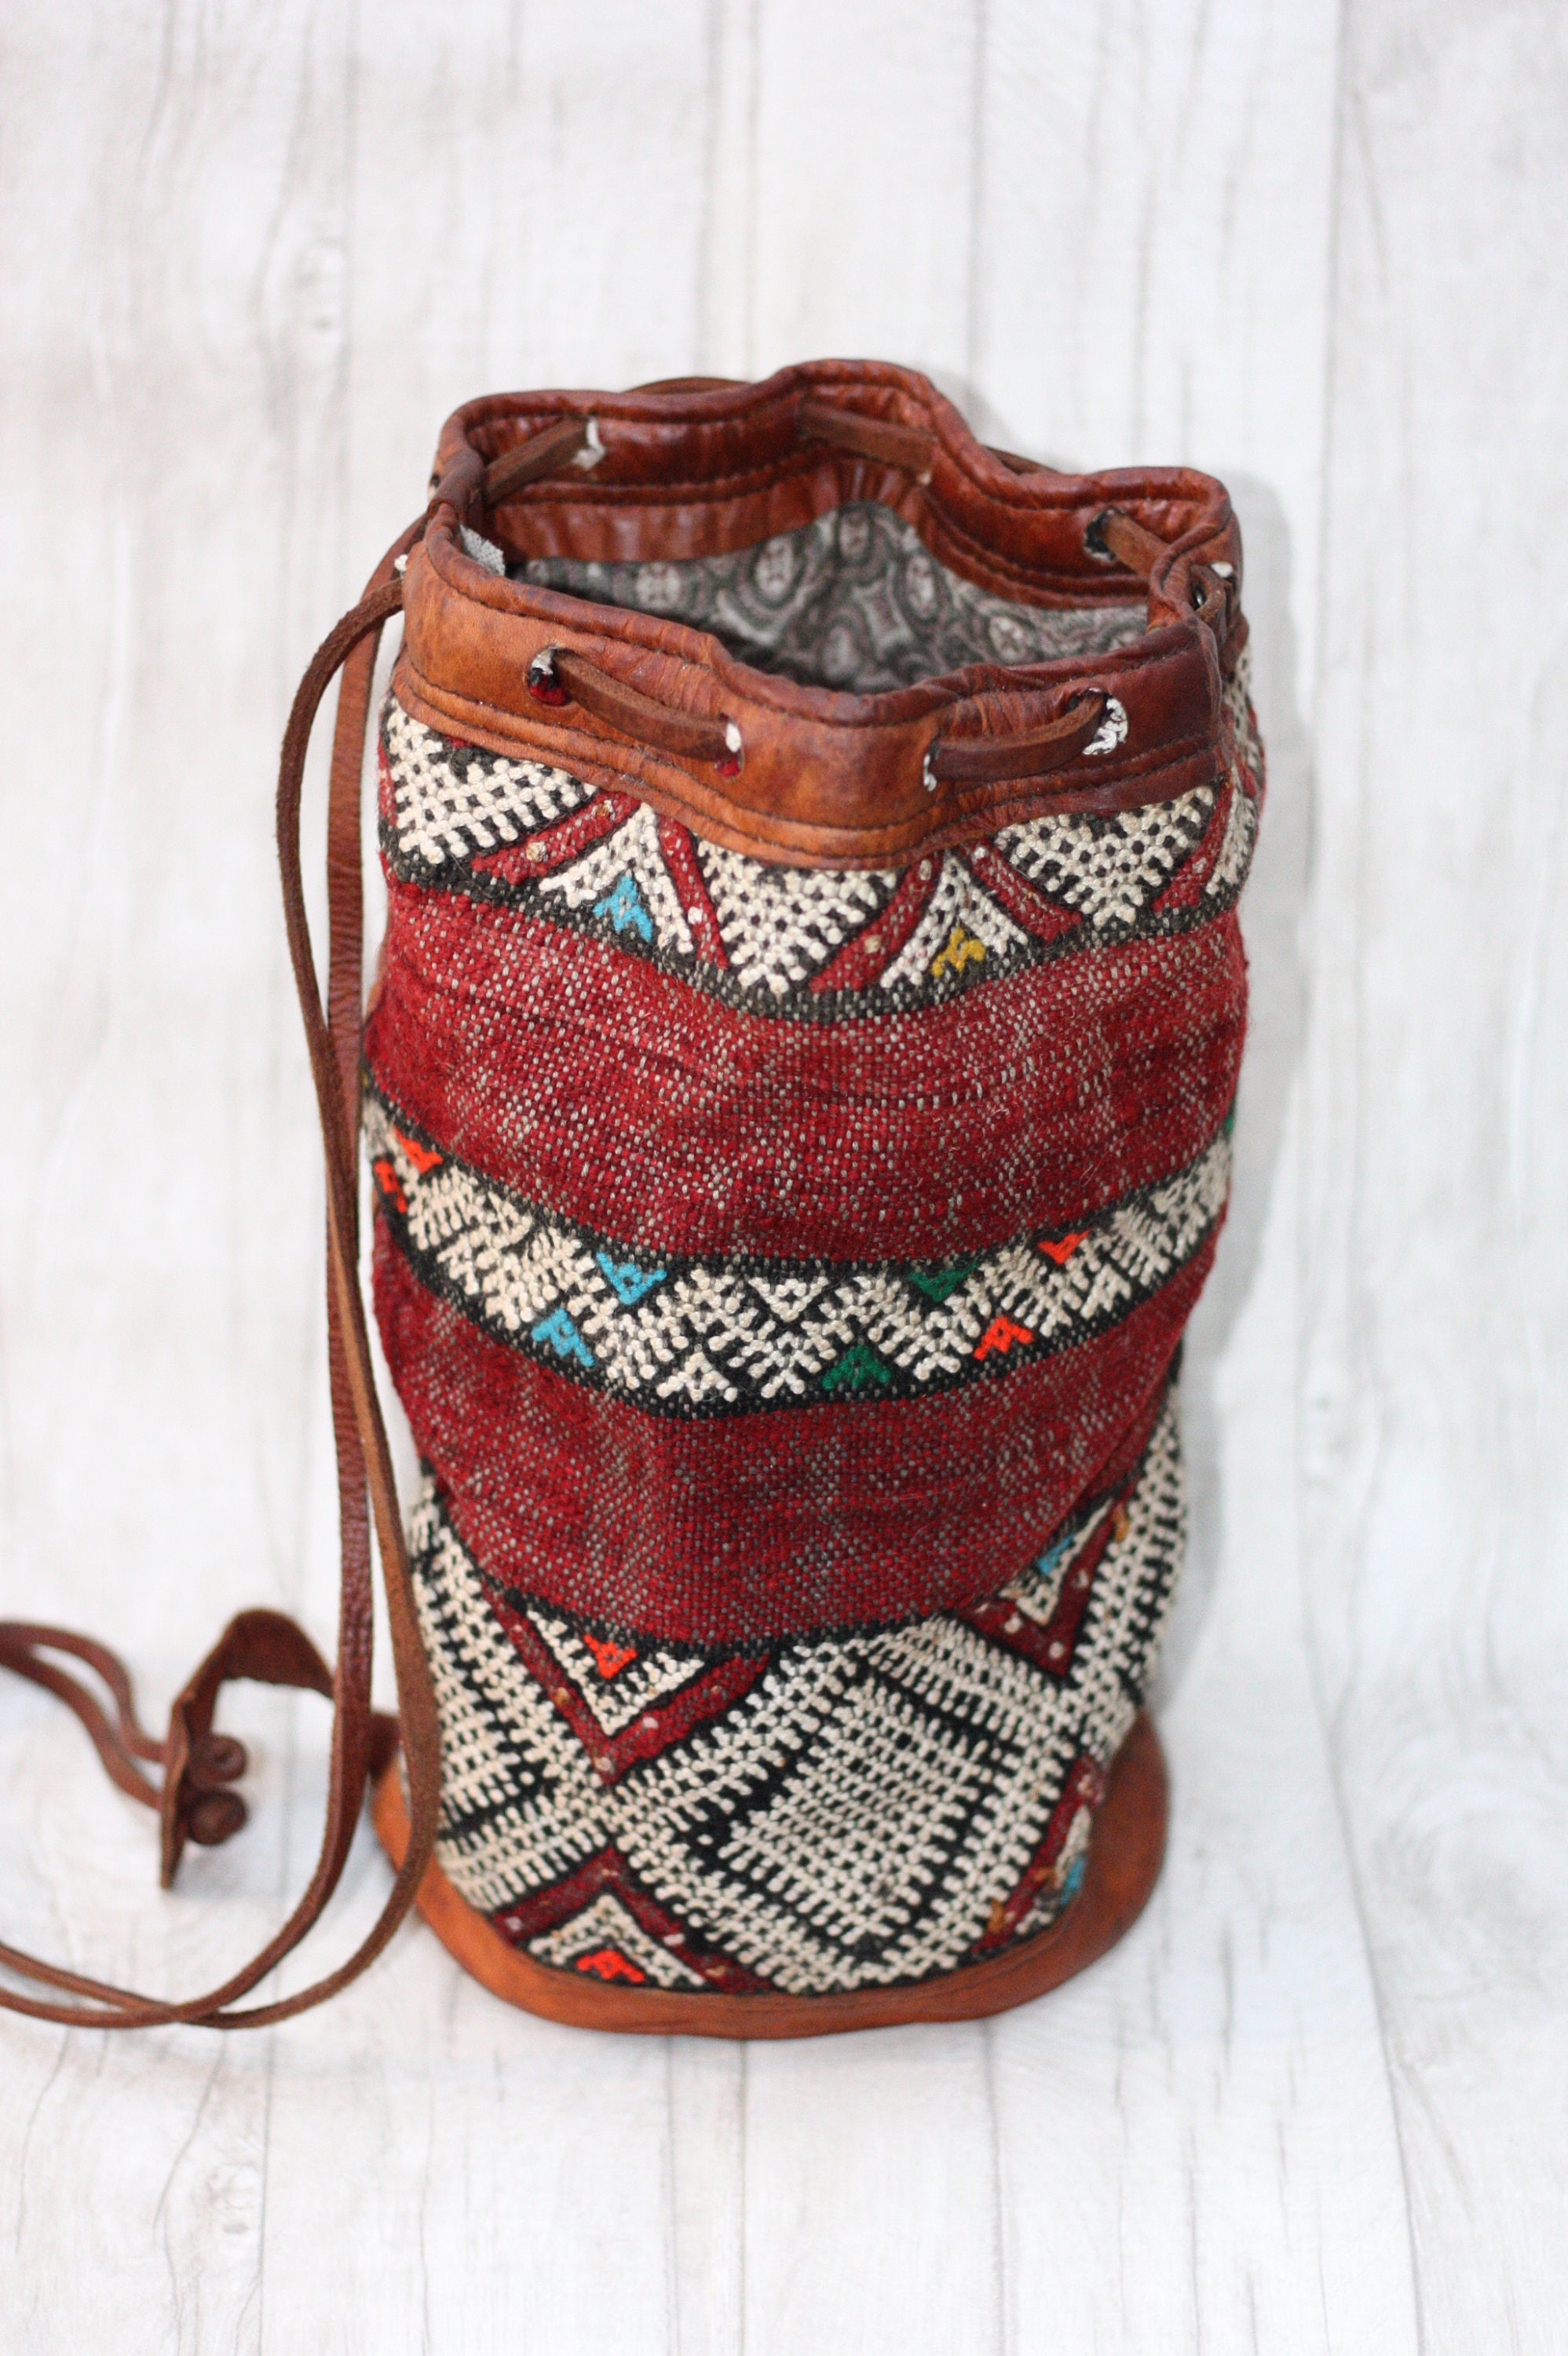 VINTAGE BUCKET BAG - Embroidered ethnic bag - Hippie rucksack - Boho